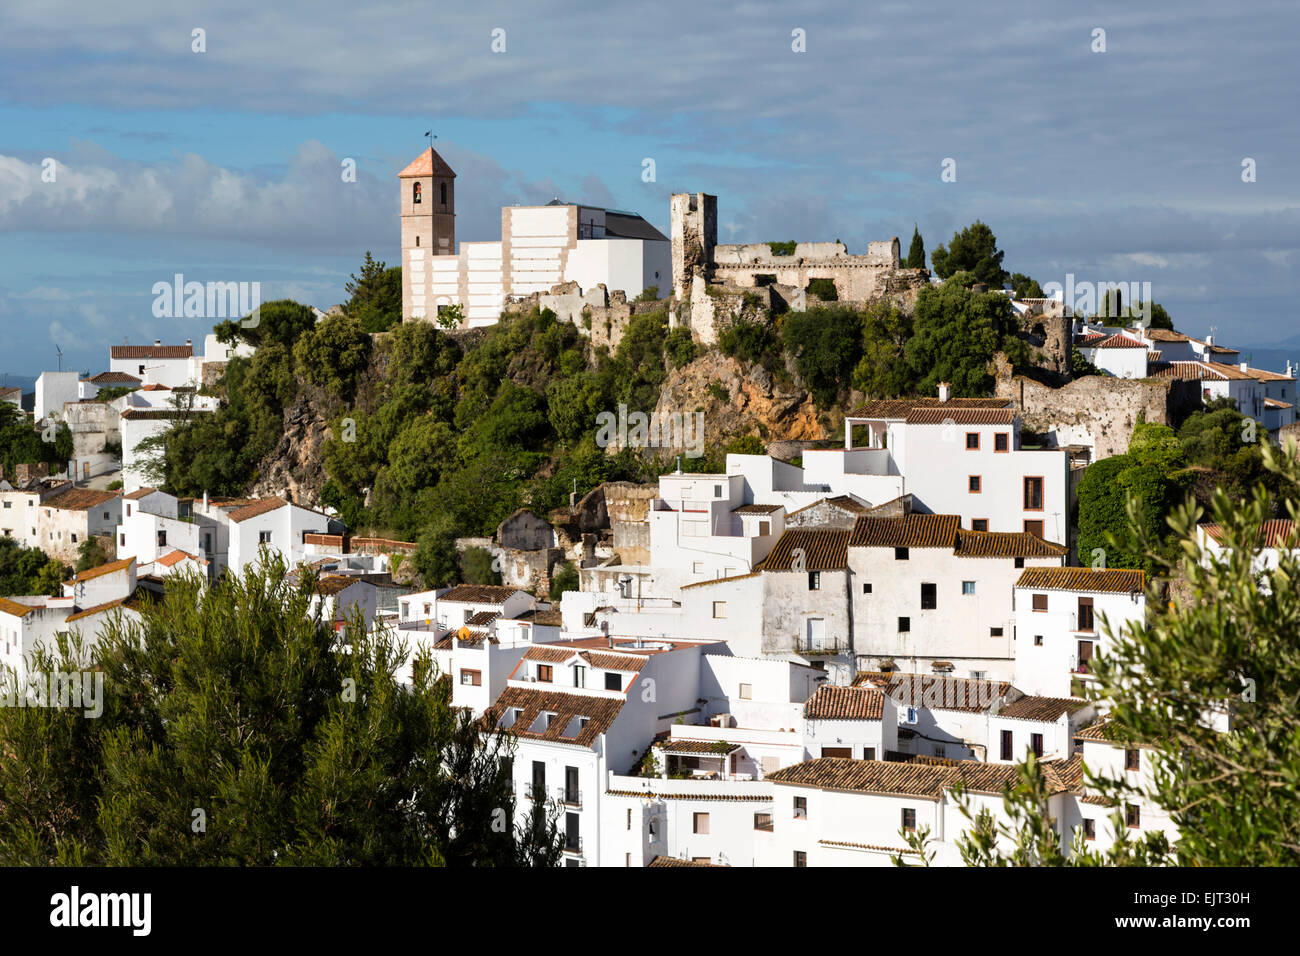 La province de Malaga, Costa del Sol, Andalousie, Espagne du sud. Ville de montagne typique blanchi à la chaux Banque D'Images